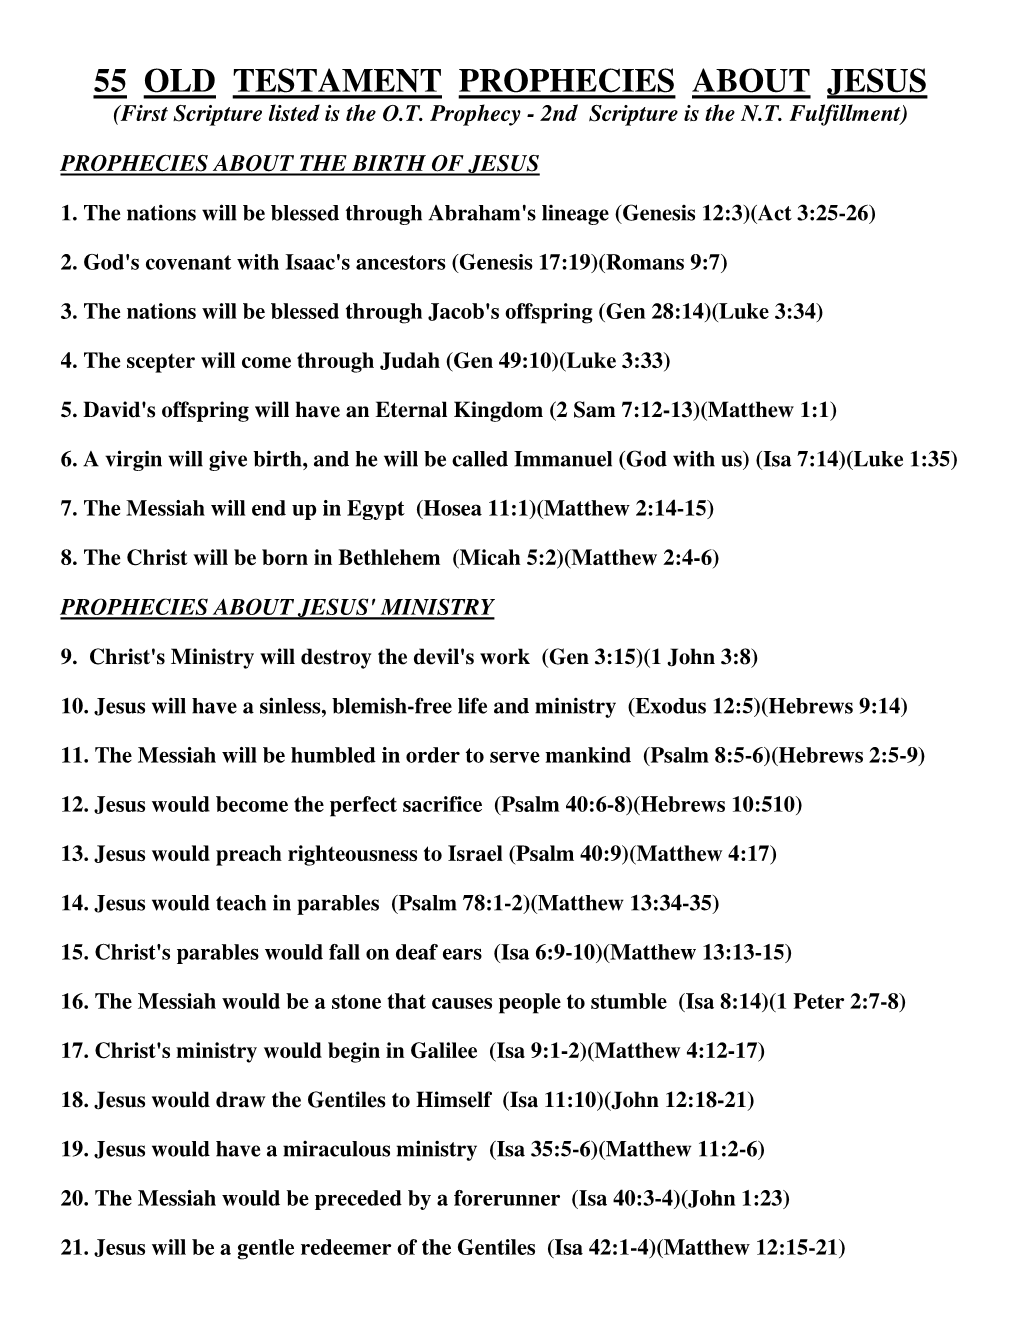 55 Old Testament Prophecies About Jesus (Pdf)